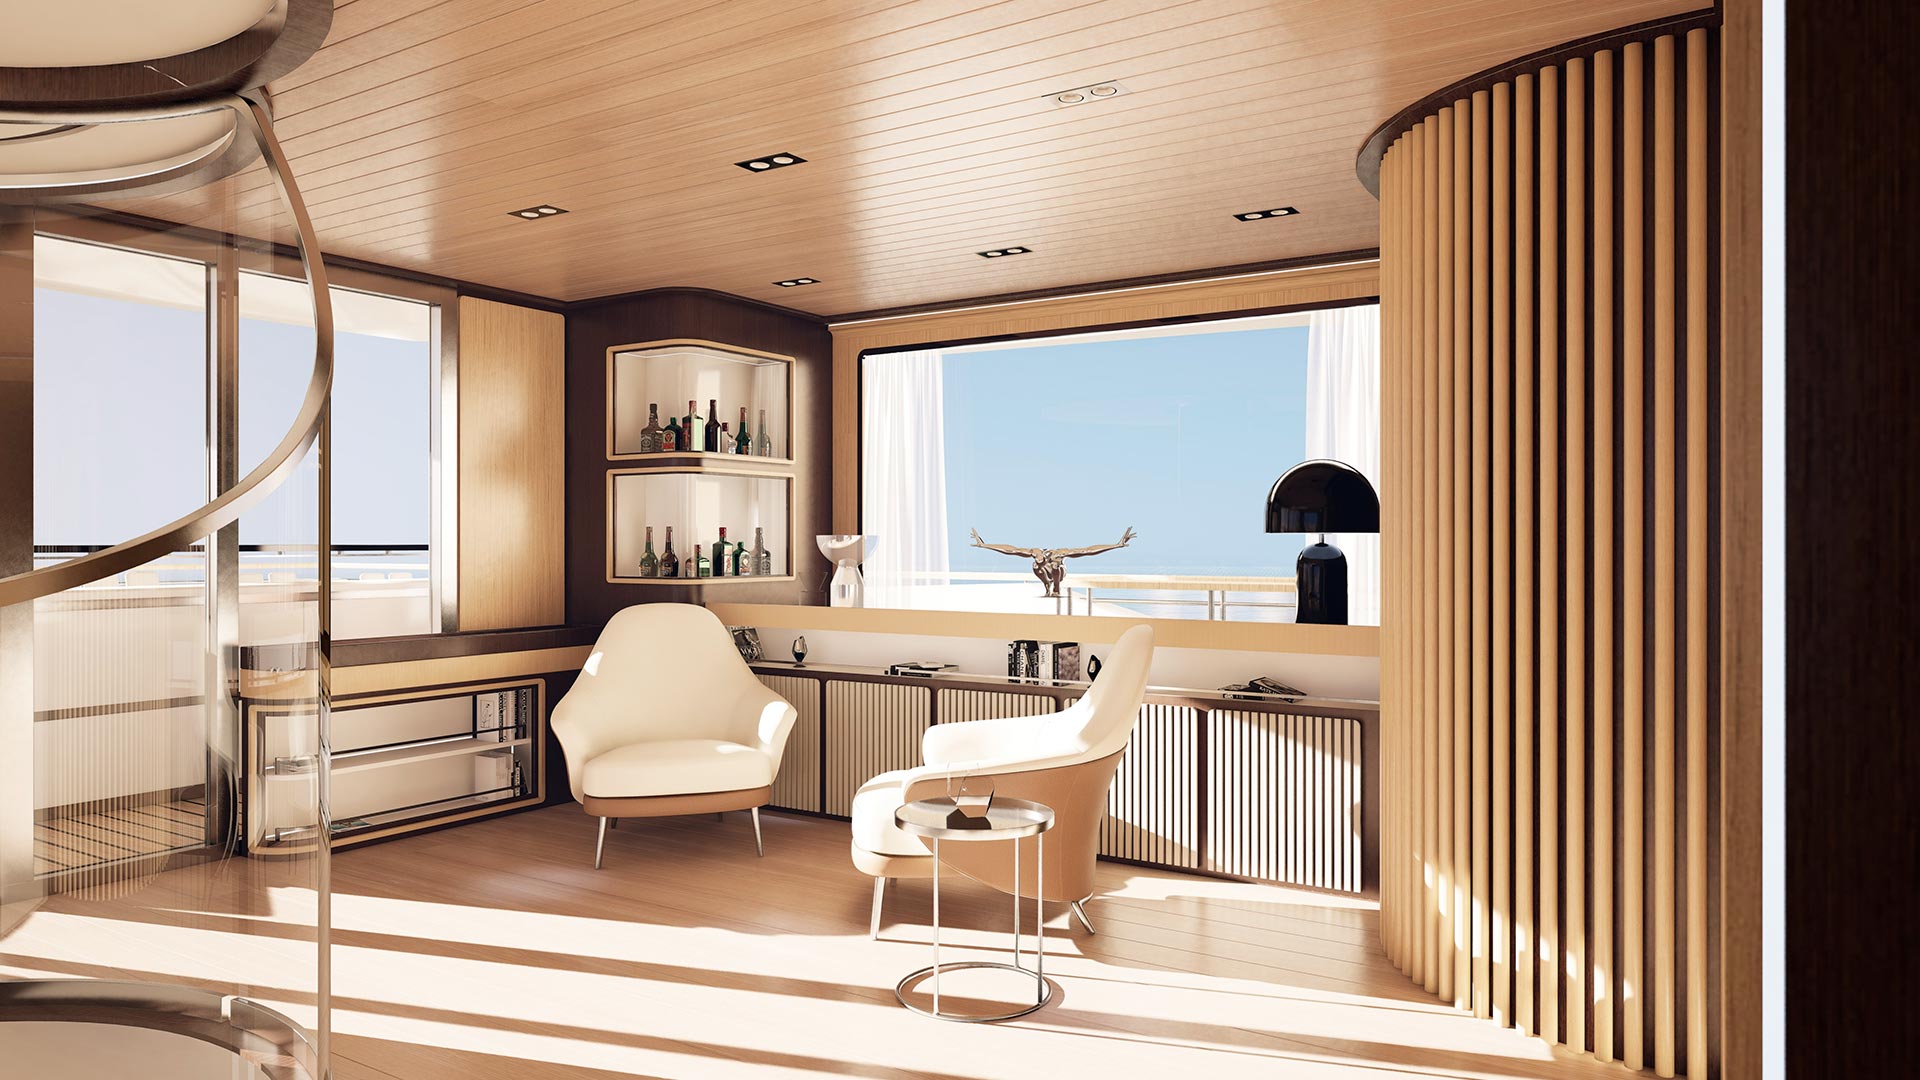 Luxurious yacht interior upper deck